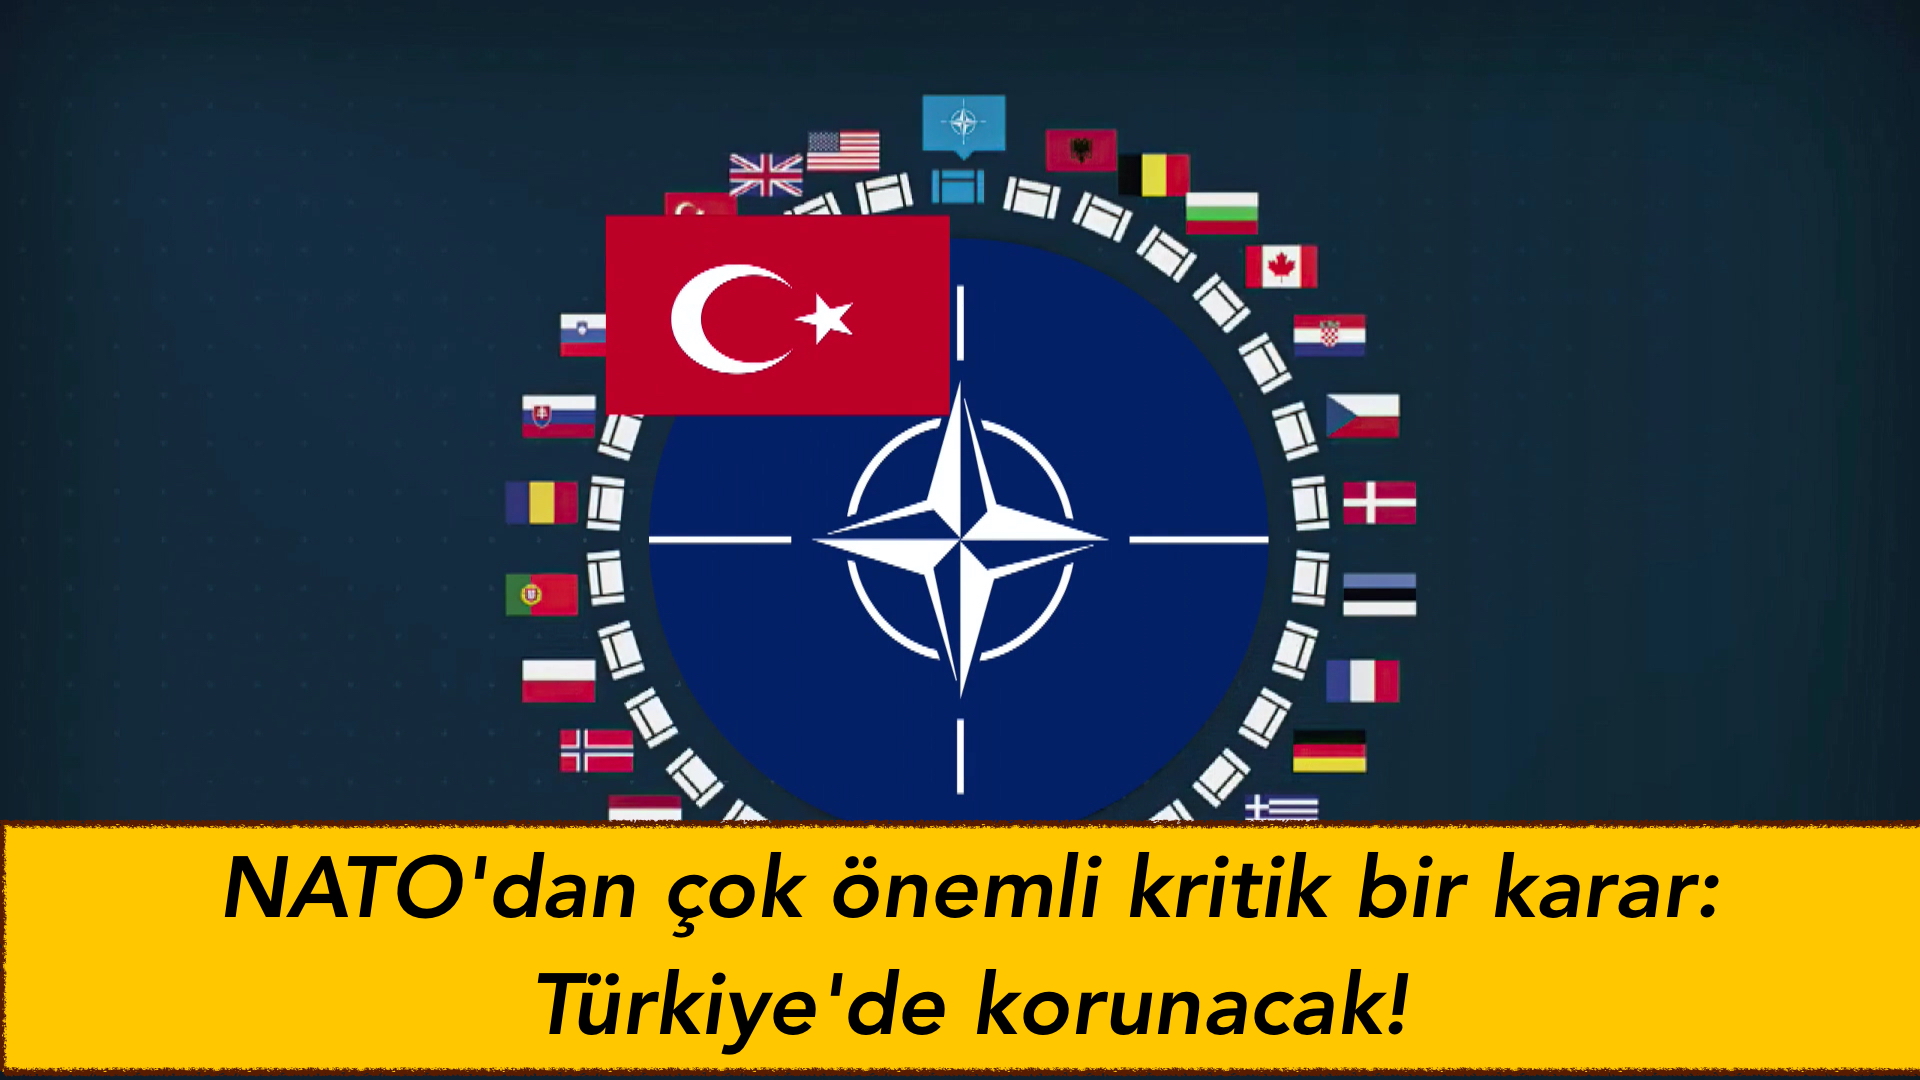 NATO’dan çok önemli kritik bir karar: Türkiye’de korunacak!